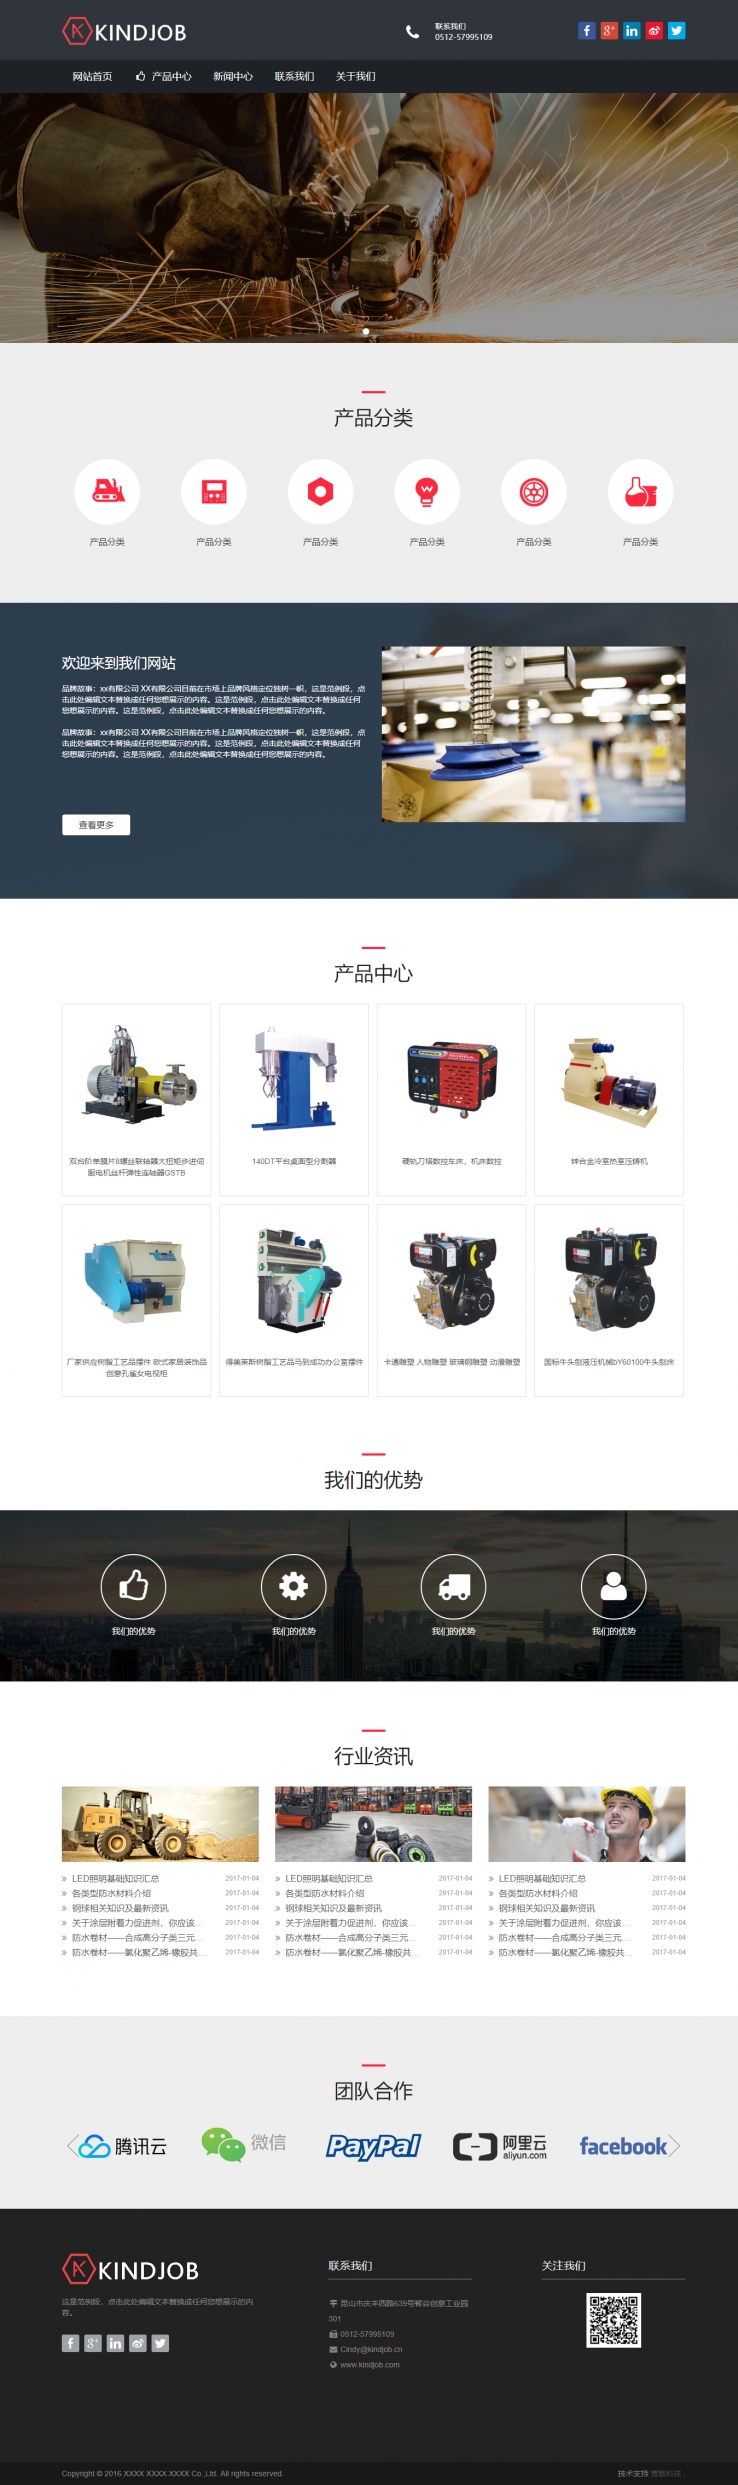 红色简洁风格的机械设备公司企业网站源码下载